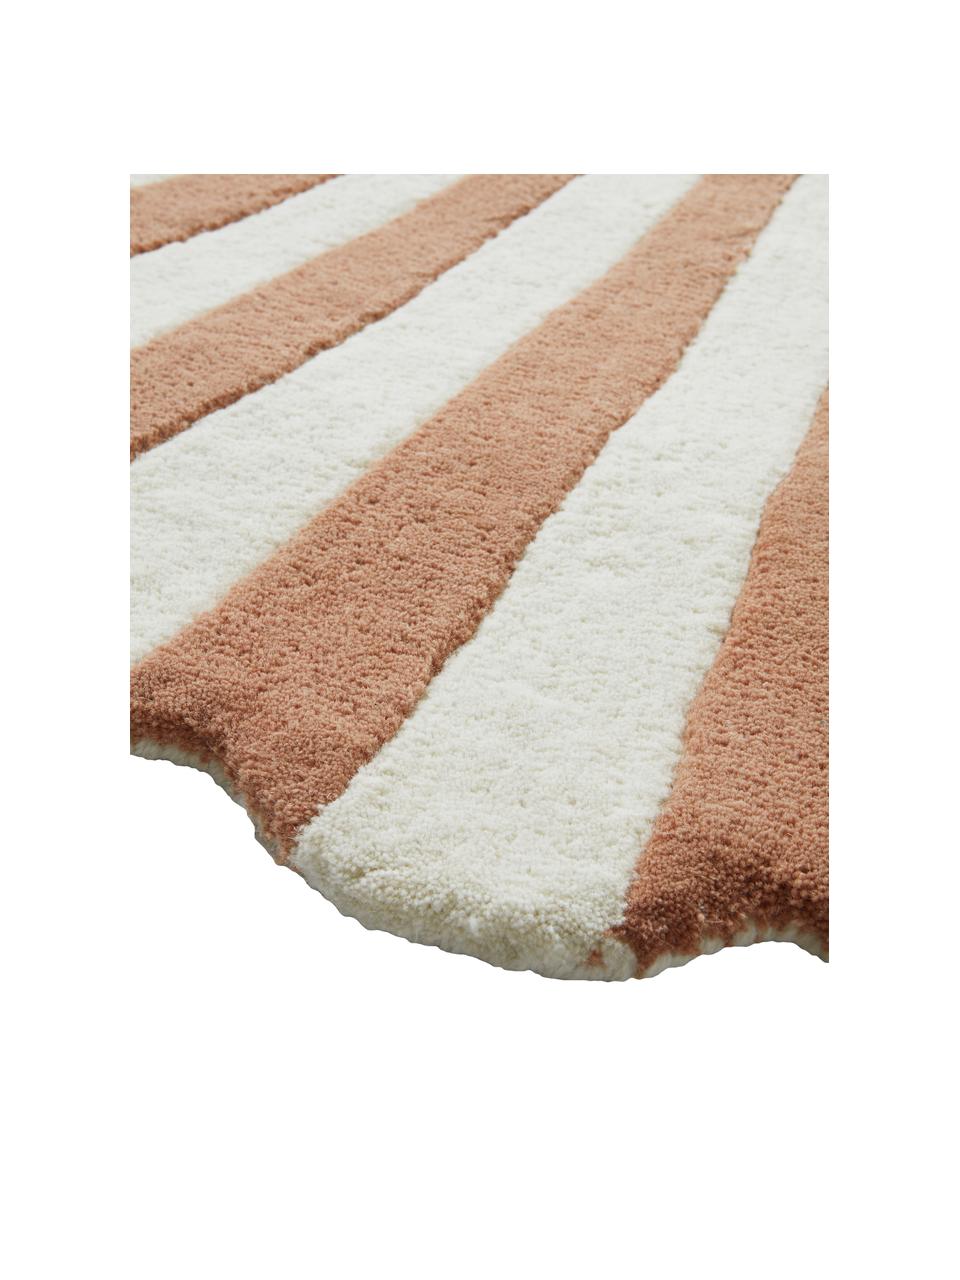 Alfombra artesanal de lana Schellie, 100% lana
Las alfombras de lana se pueden aflojar durante las primeras semanas de uso, la pelusa se reduce con el uso diario, Rosa ladrillo, blanco, An 105 x L 120 cm (Tamaño S)